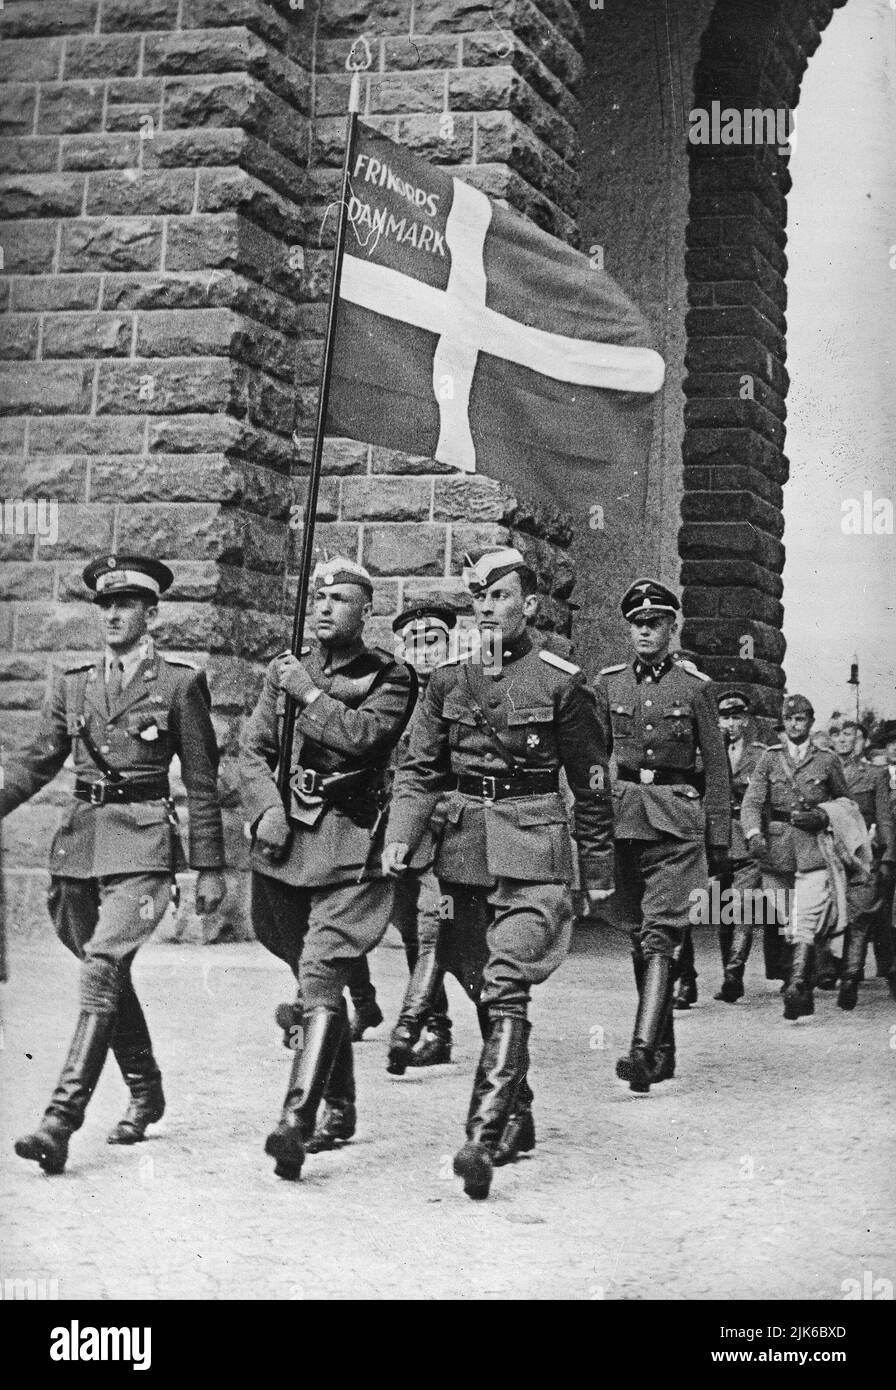 Die Nazi-deutschen Elitetruppen die Waffen-SS hatte viele Abteilungen ausländischer Freiwilliger, die an den nationalsozialismus glaubten. Hier marschieren Mitglieder des Freien Korps Dänemark im Juli 1941 in Deutschland Stockfoto